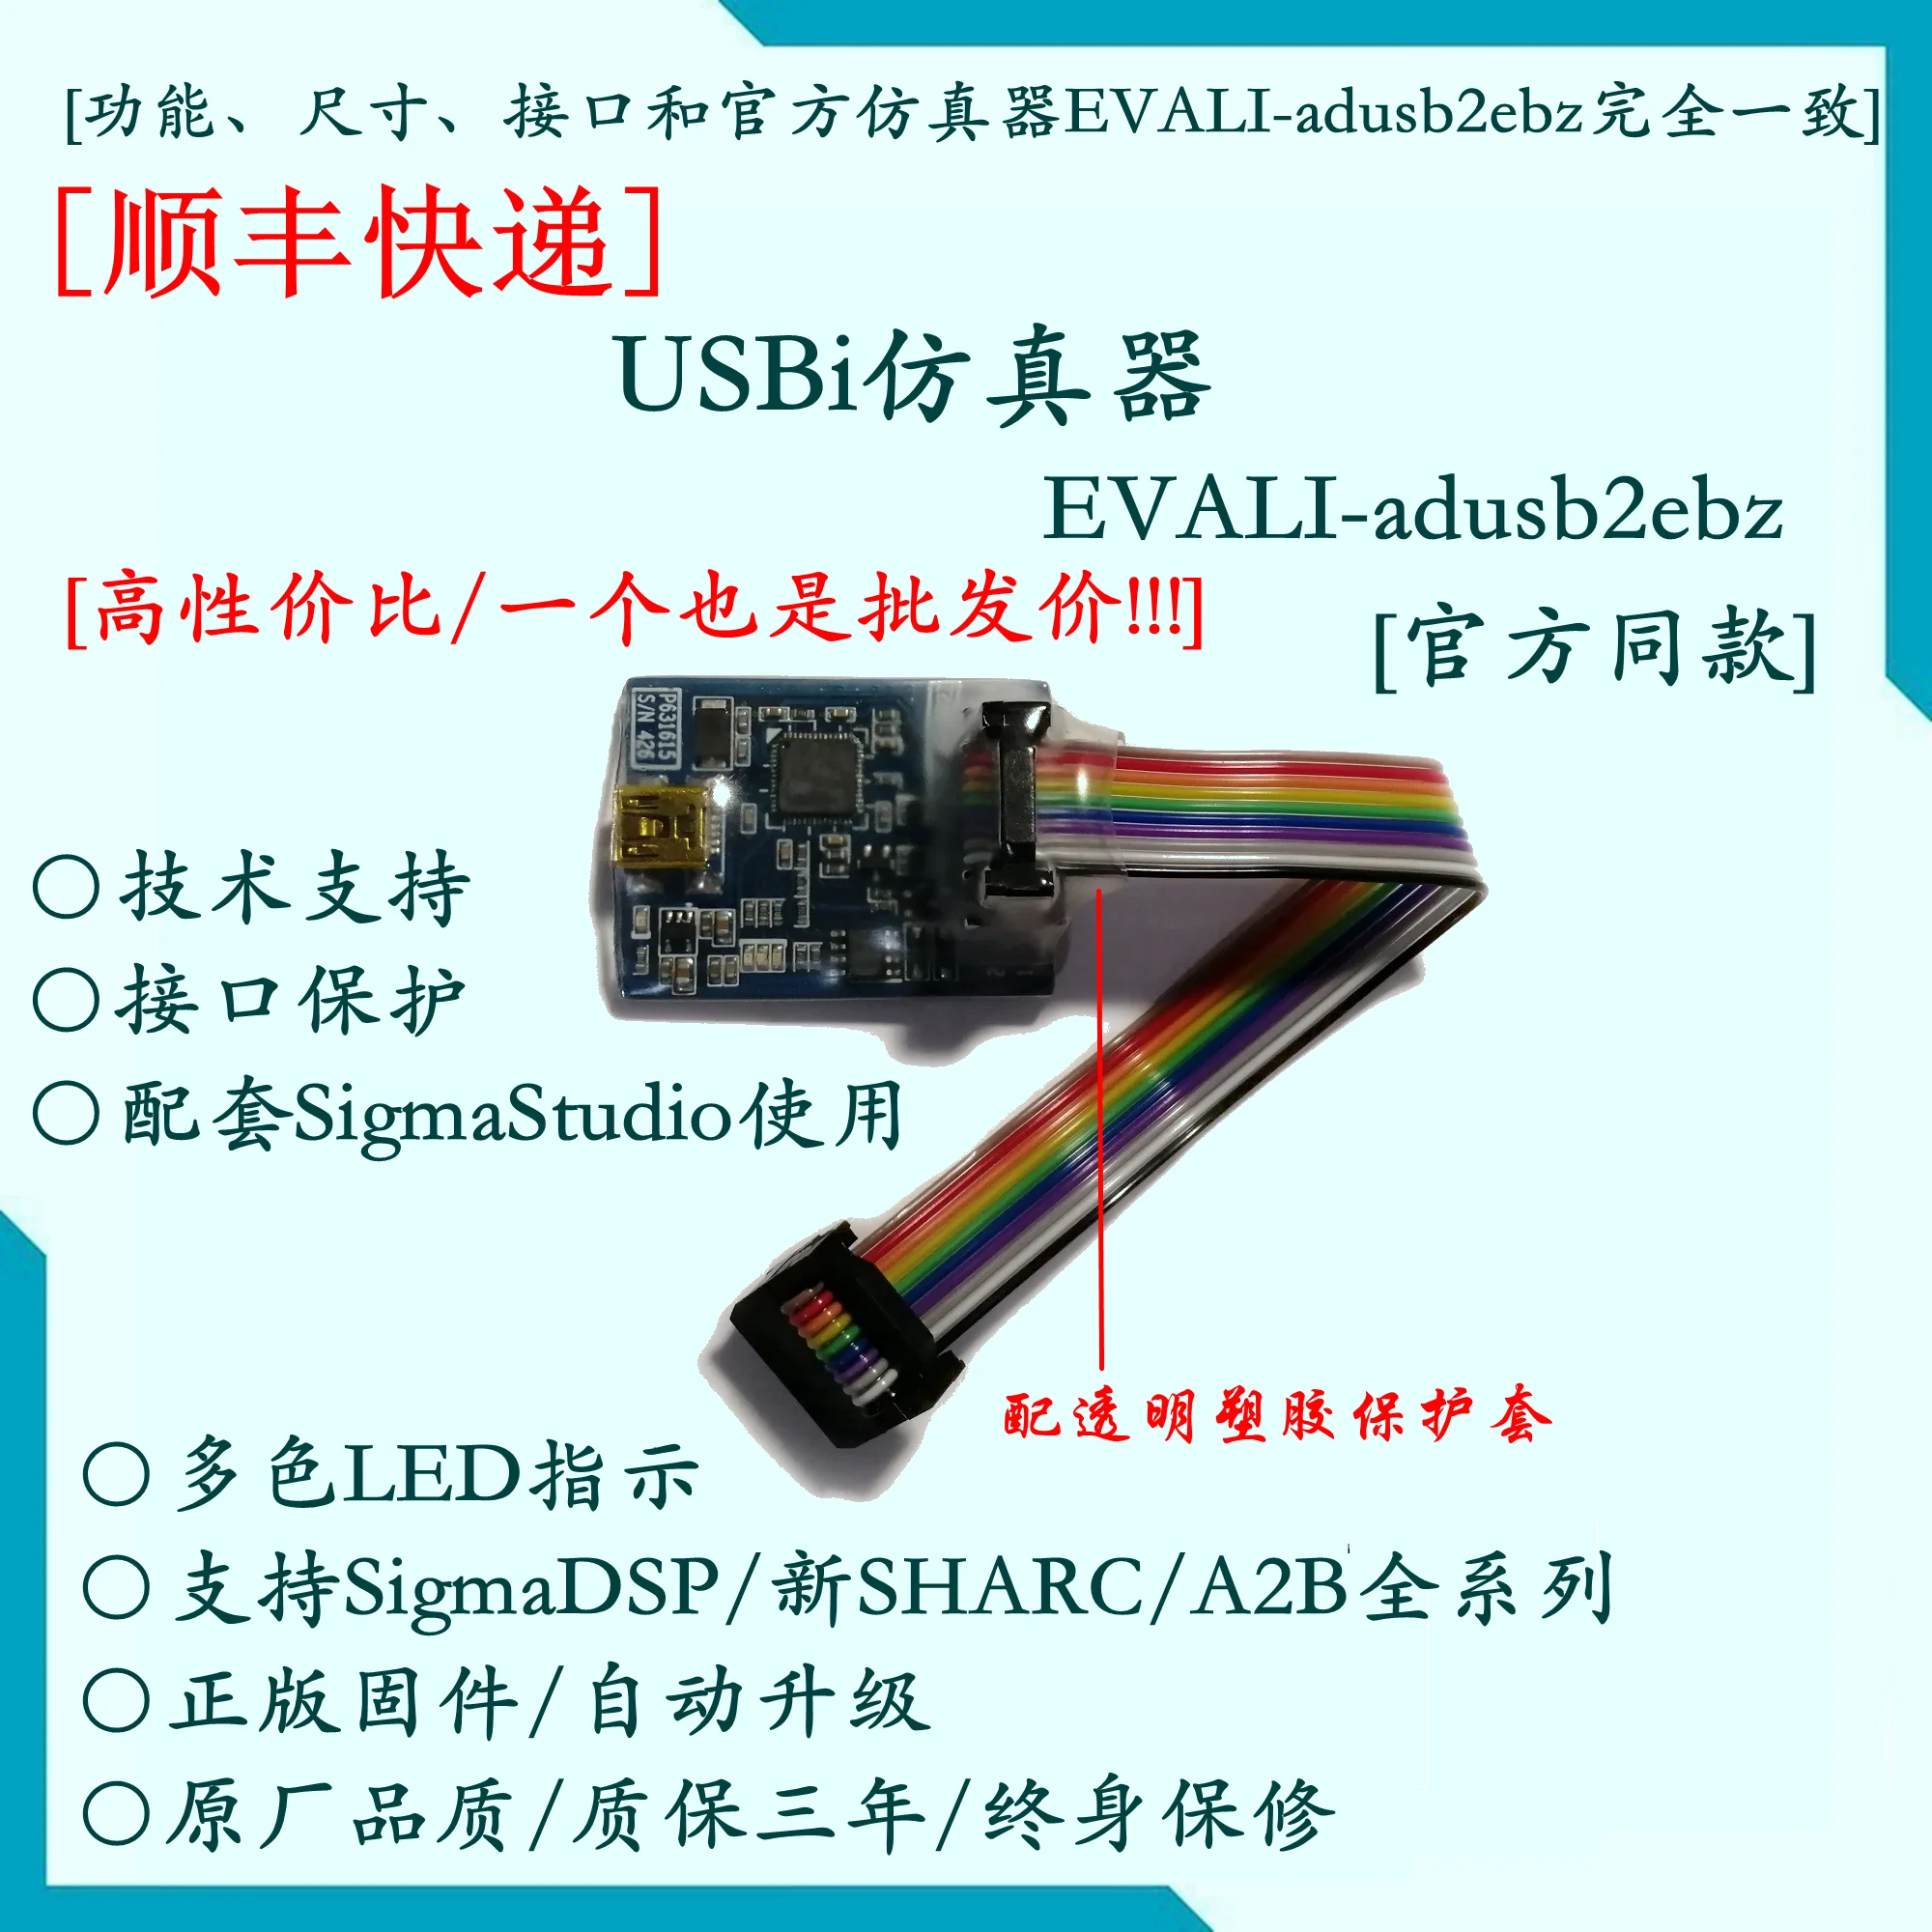 USBi Emuliatorius / SigmaDSP Emuliatorius / ADAU1701 / ADAU1401 / EVAL-ADUSB2EBZ